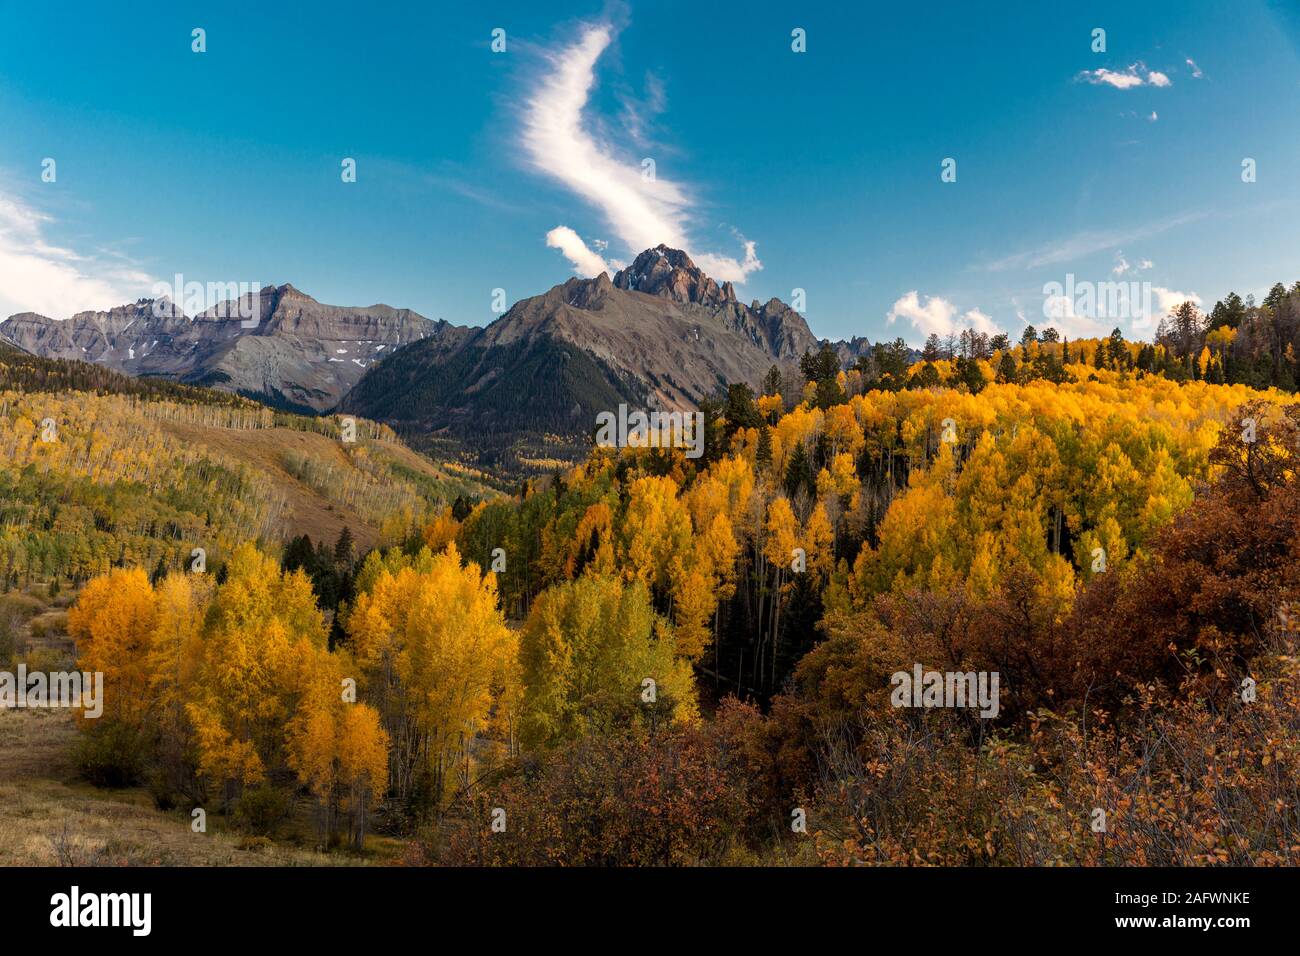 4 octobre 2019 - Ridgway, Colorado, USA - Montagnes de San Juan à l'automne, près de Colorado Ridgway - Dallas Creek à l'ouest de l'autoroute 62 à Telluride, Colorado Aspen - automne Couleur Banque D'Images